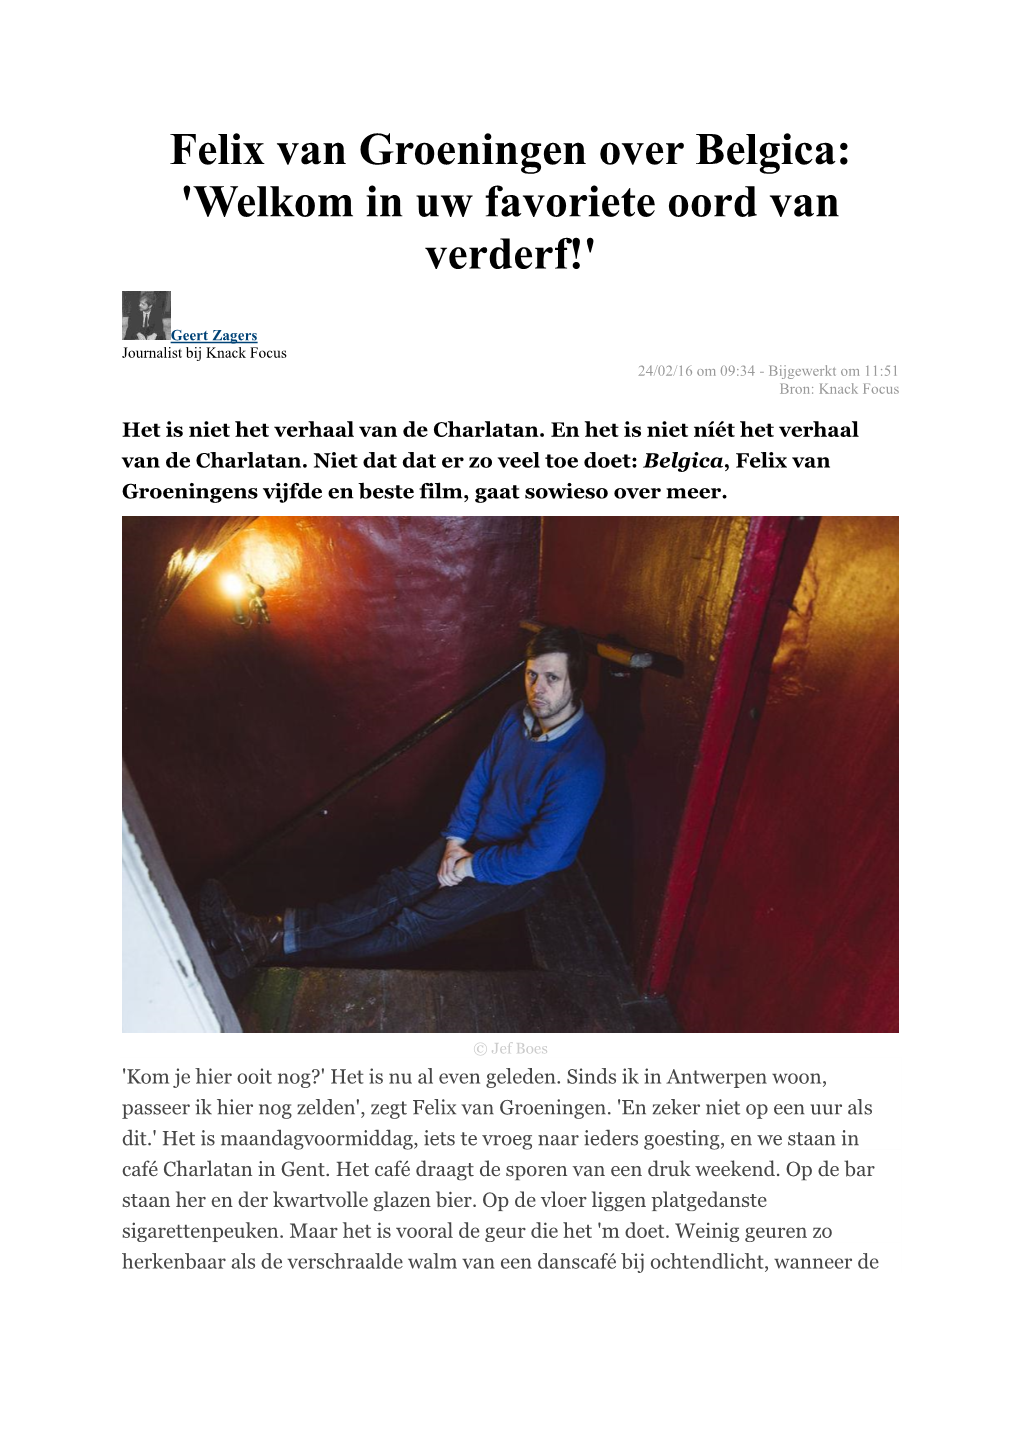 Felix Van Groeningen Over Belgica: 'Welkom in Uw Favoriete Oord Van Verderf!'